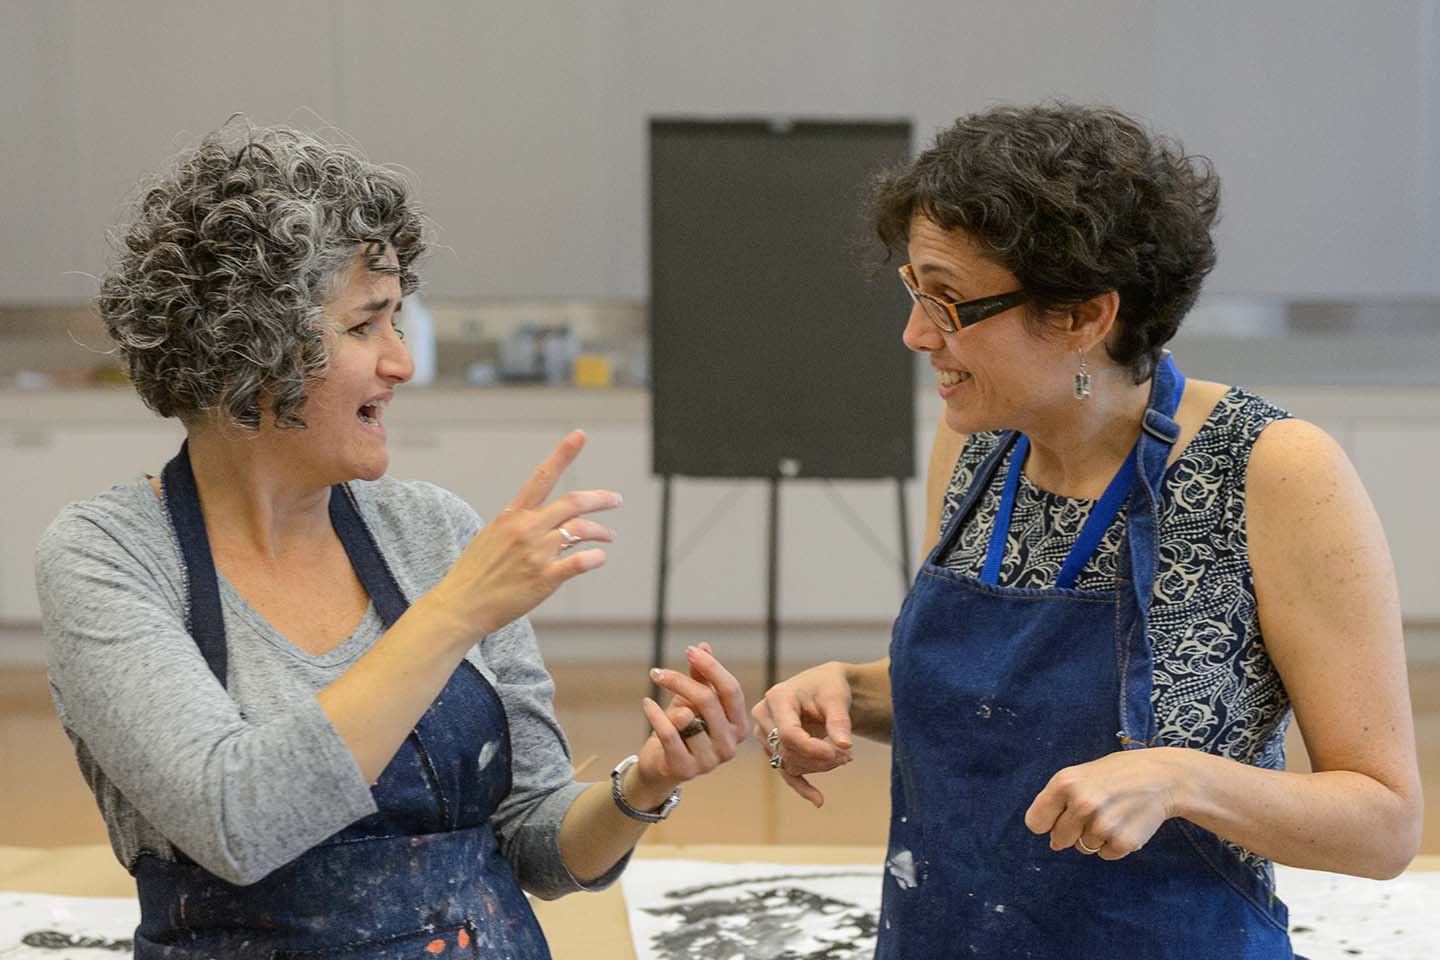 Two women wearing smocks for art-making communicating in American Sign Language